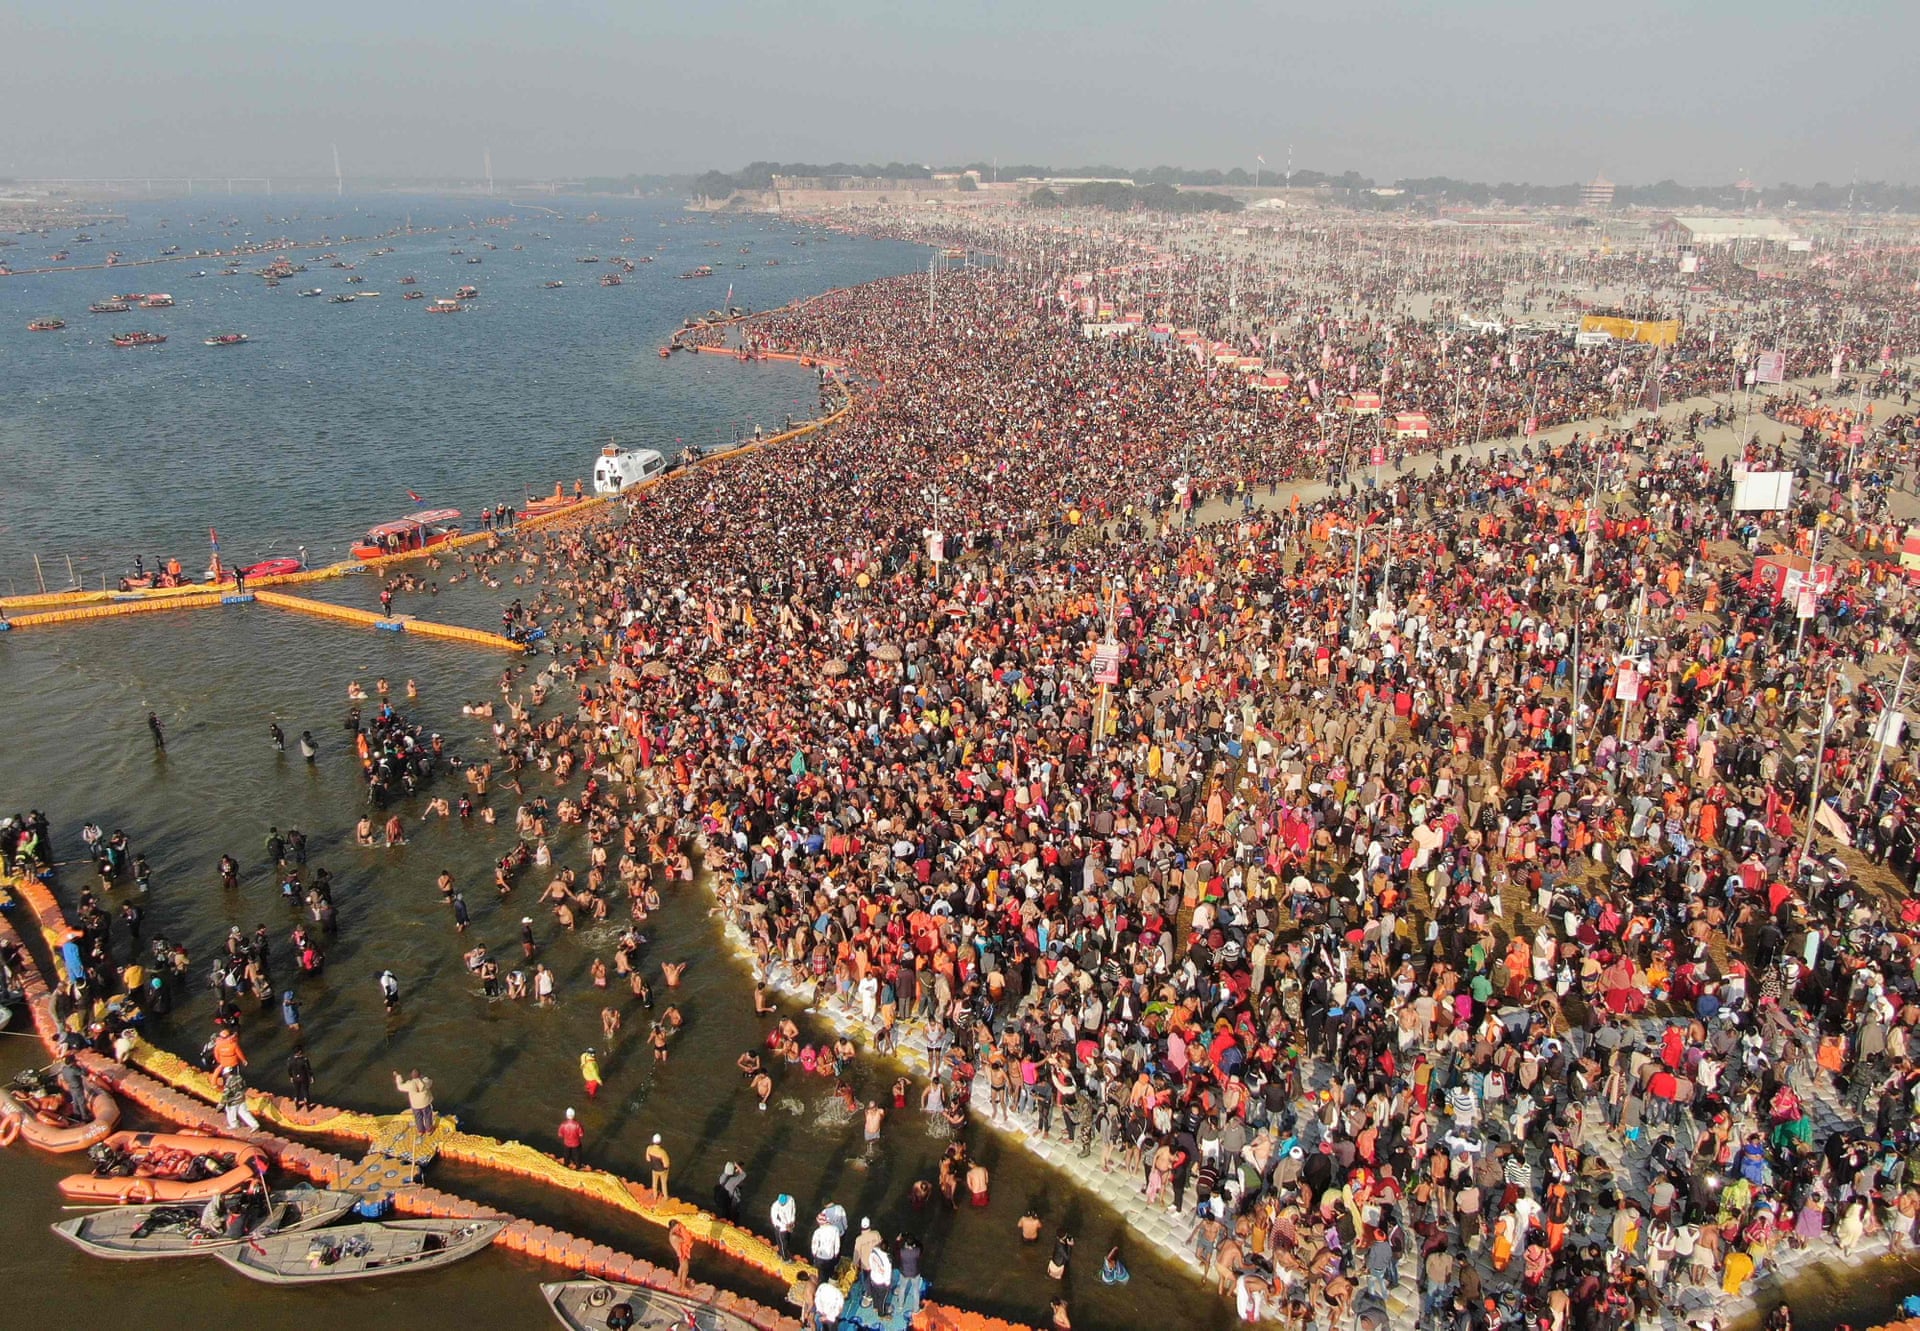 印度15亿人在大壶节圣浴,孟加拉国很难受,上游洗澡下游喝